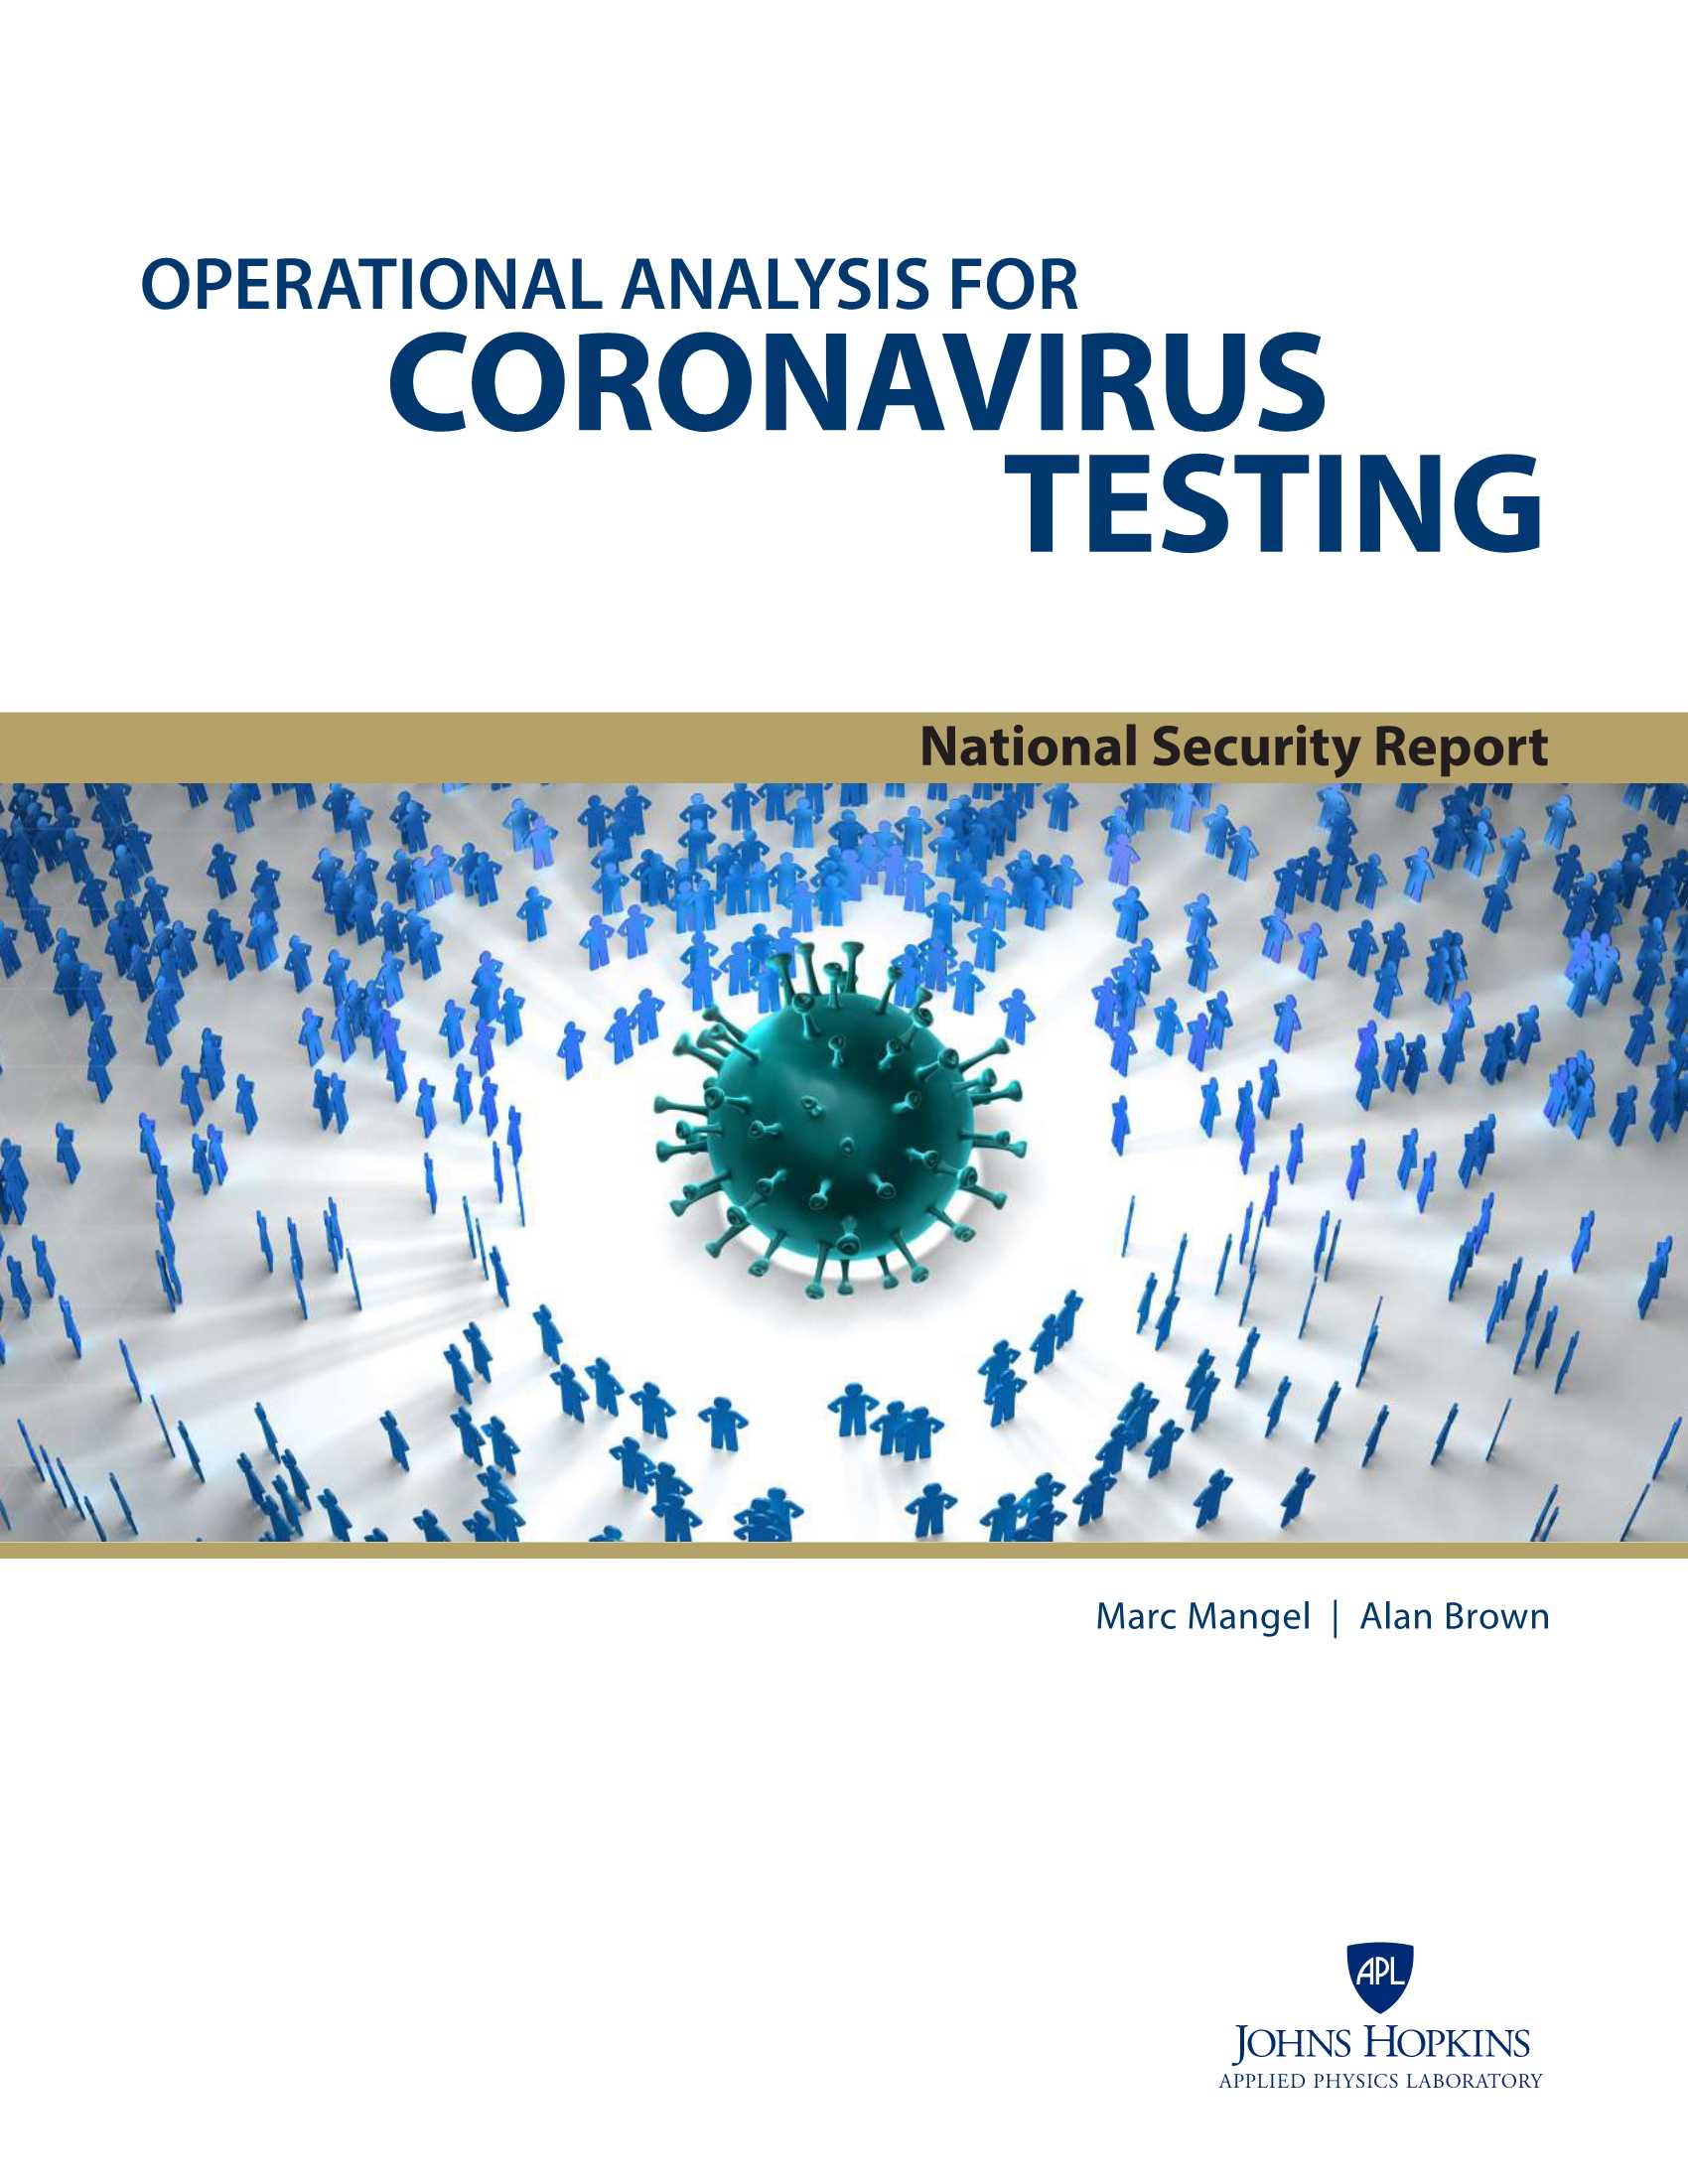 APL-冠状病毒检测的操作分析（英）-2021.11-56页